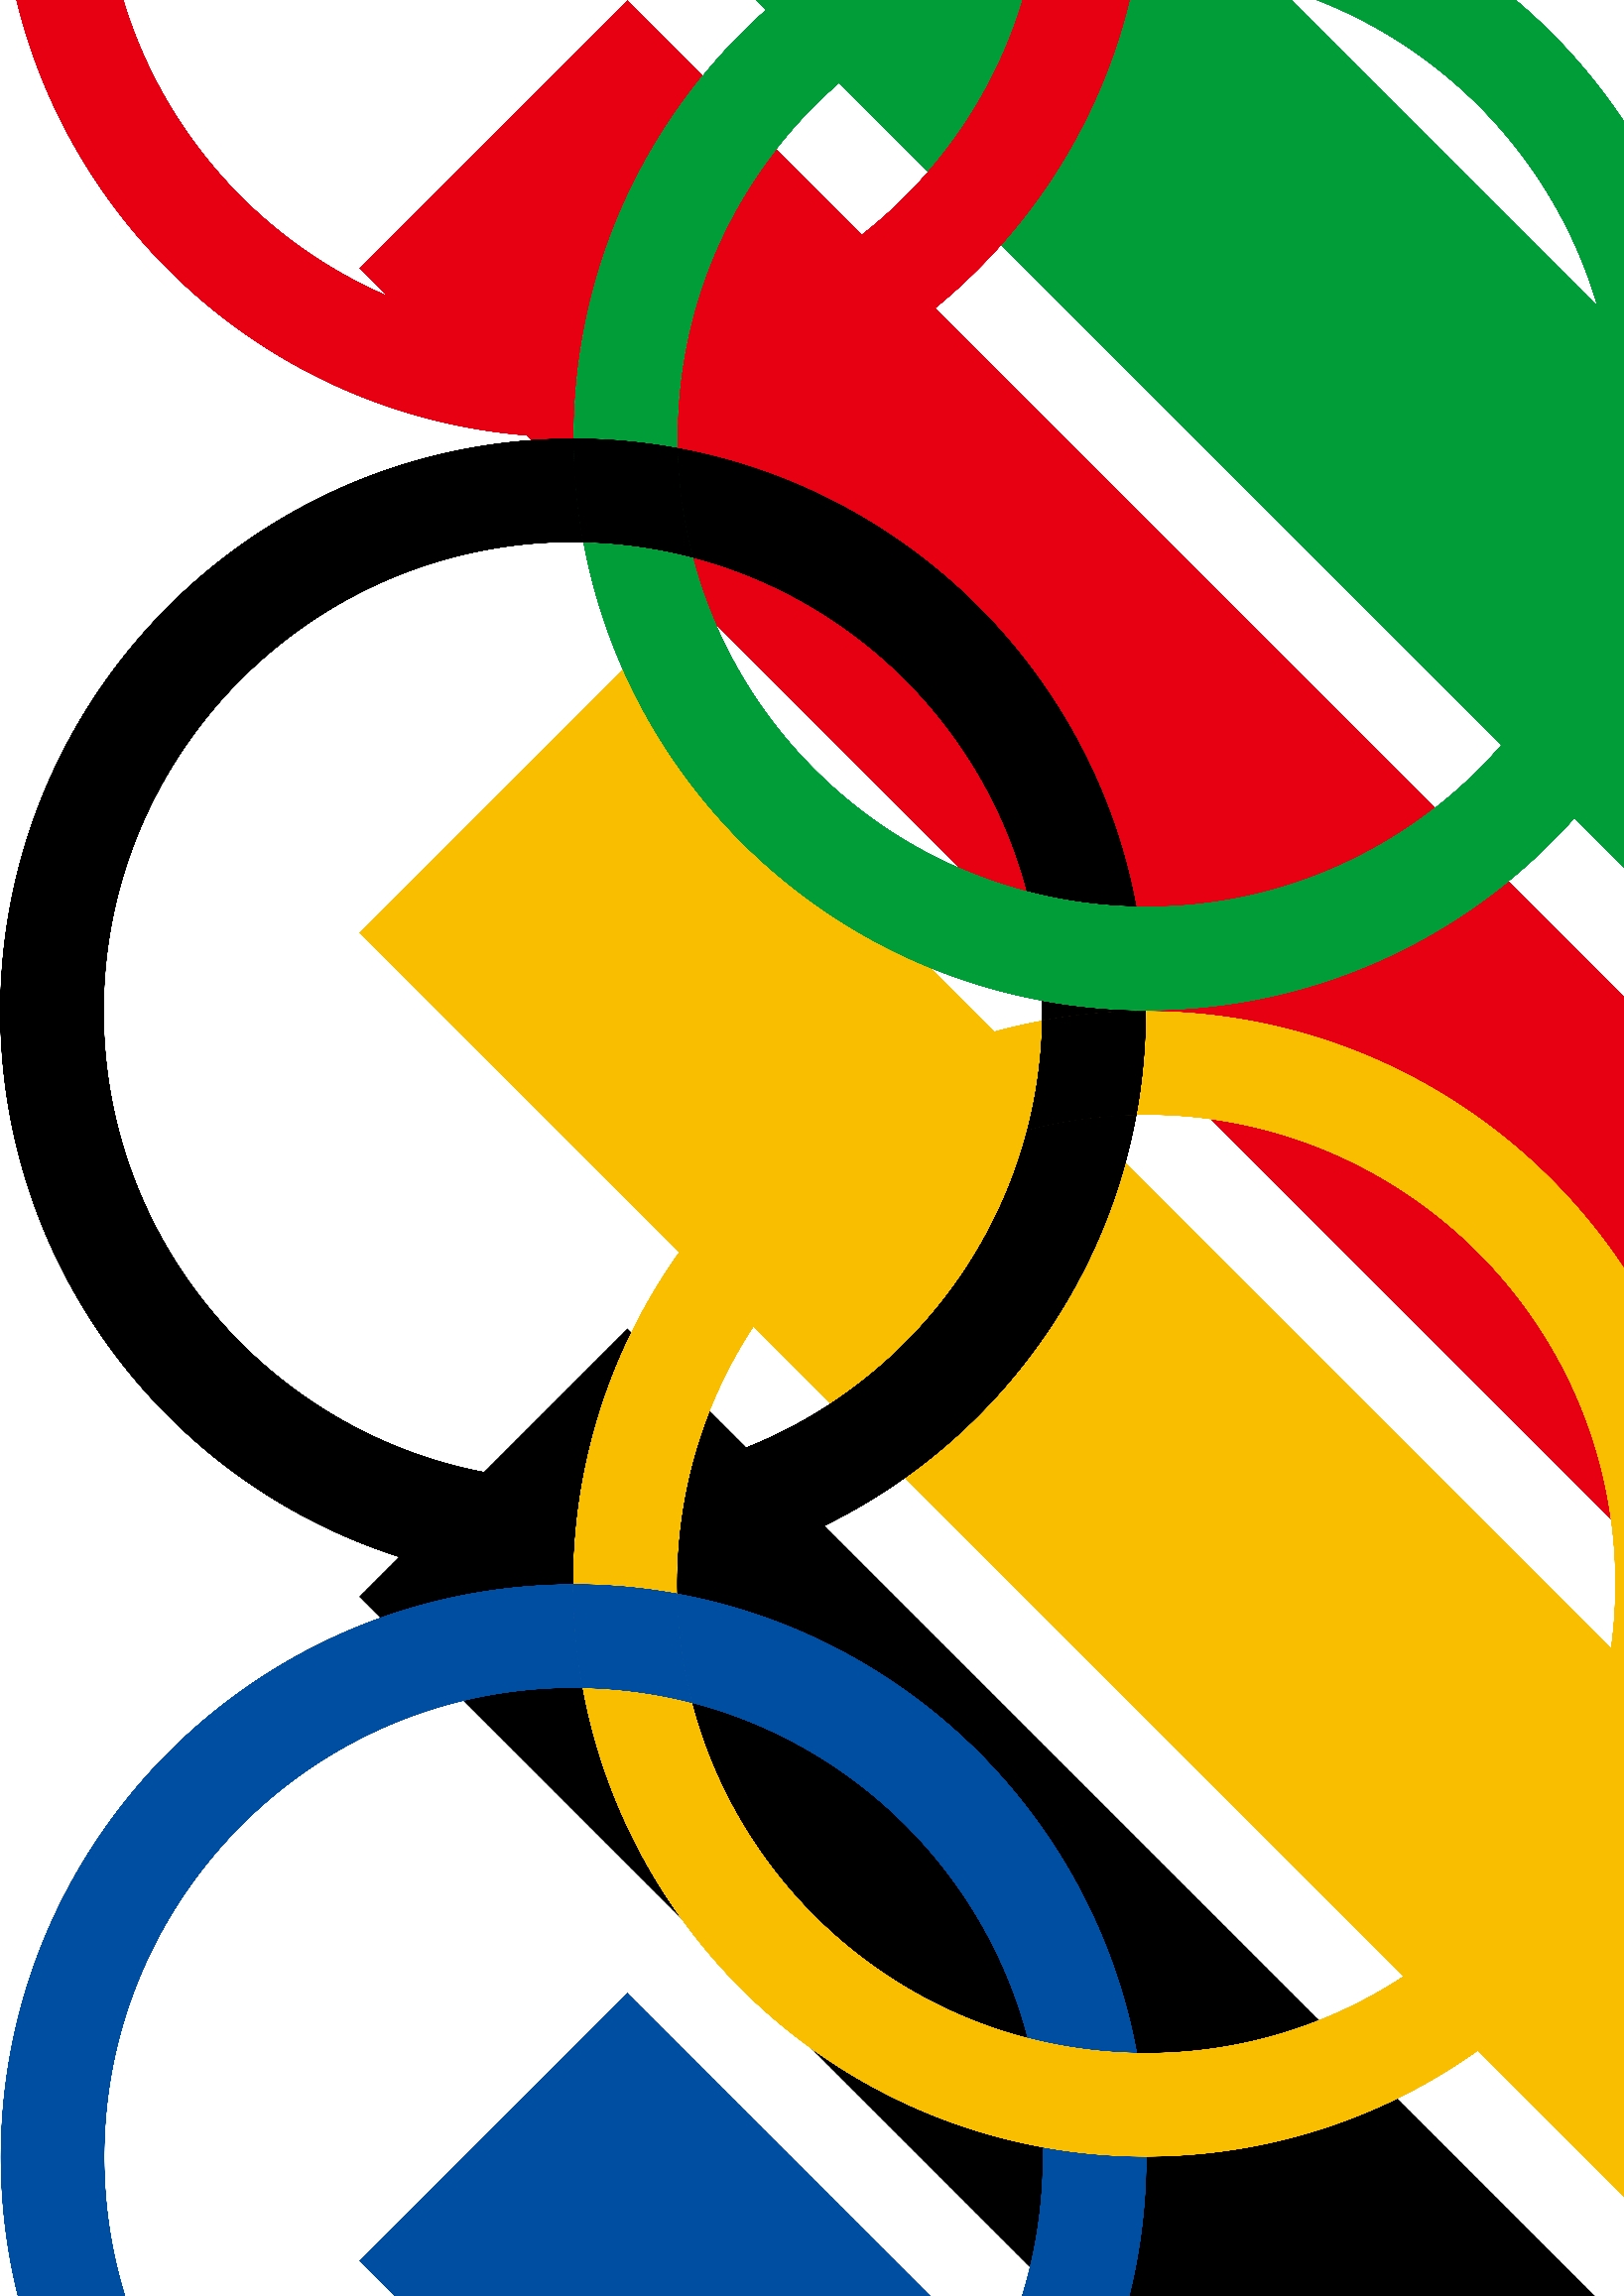 关于奥运会五环和五种颜色的设计